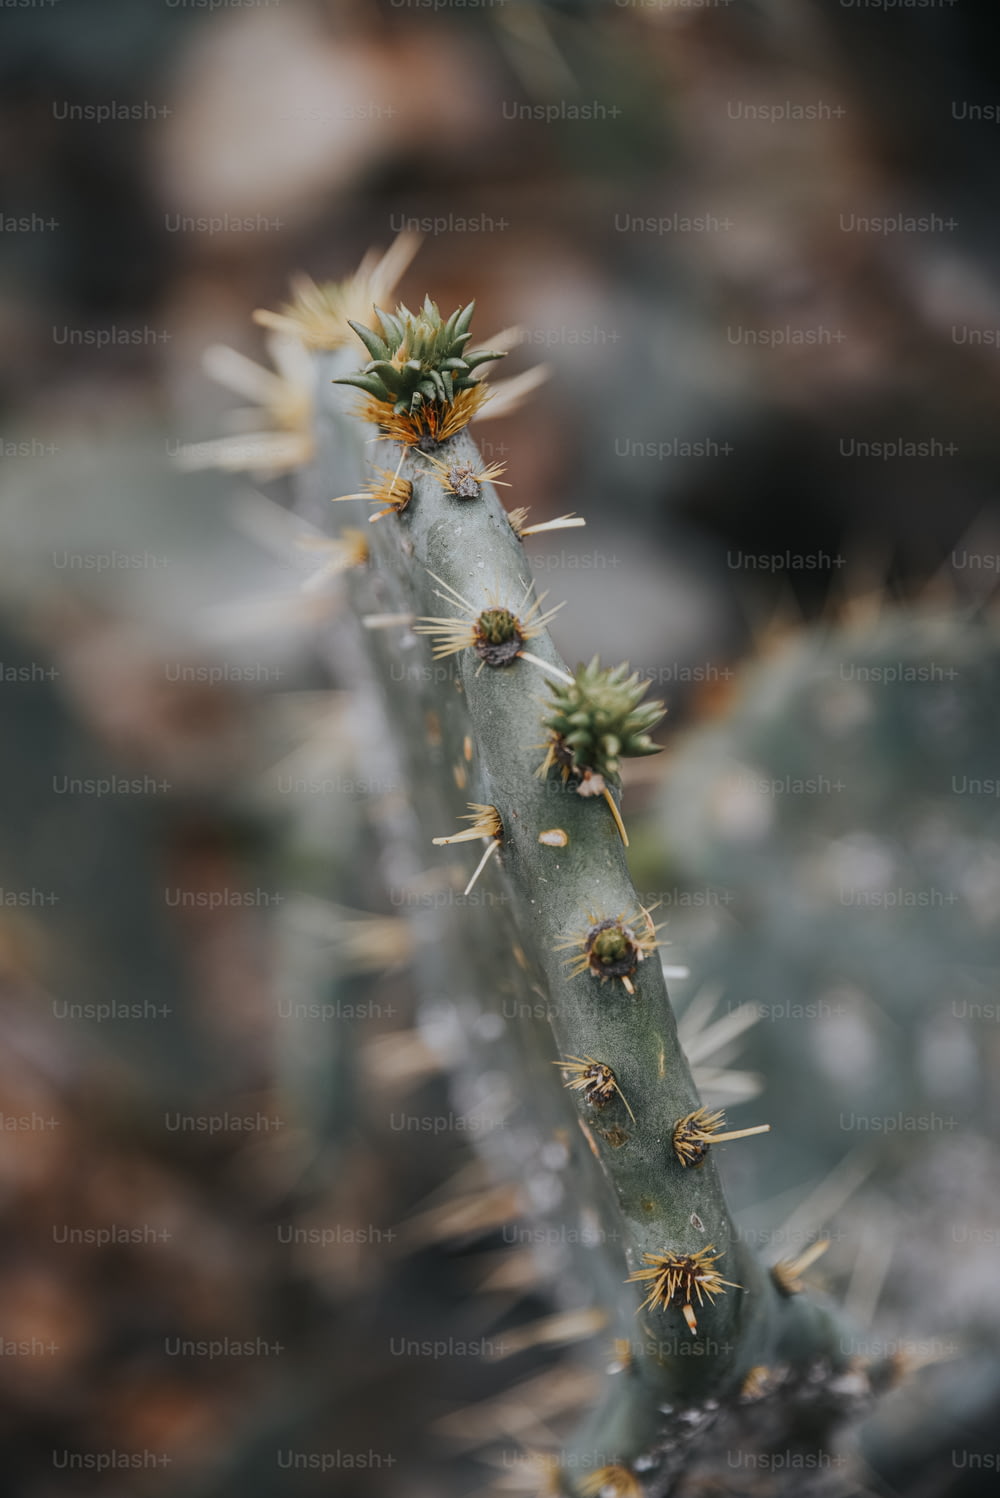 Un primo piano di una pianta di cactus con piccole gemme